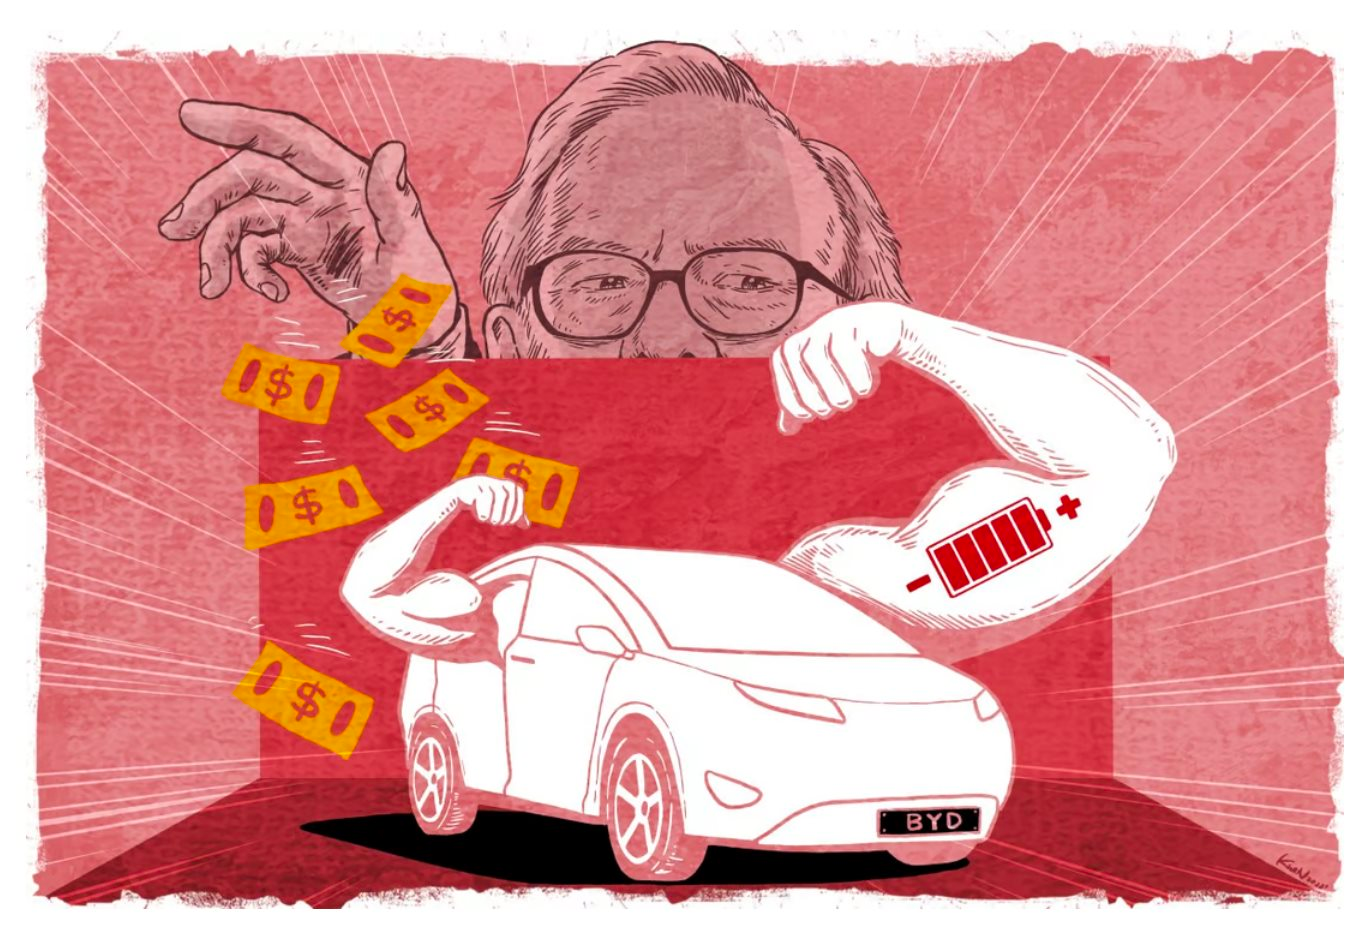 Chuyện về hãng ô tô Made in China: Từ 'kẻ vô danh' bị Elon Musk chê cười đến khoản đầu tư lãi gấp gần 40 lần của Warren Buffett 